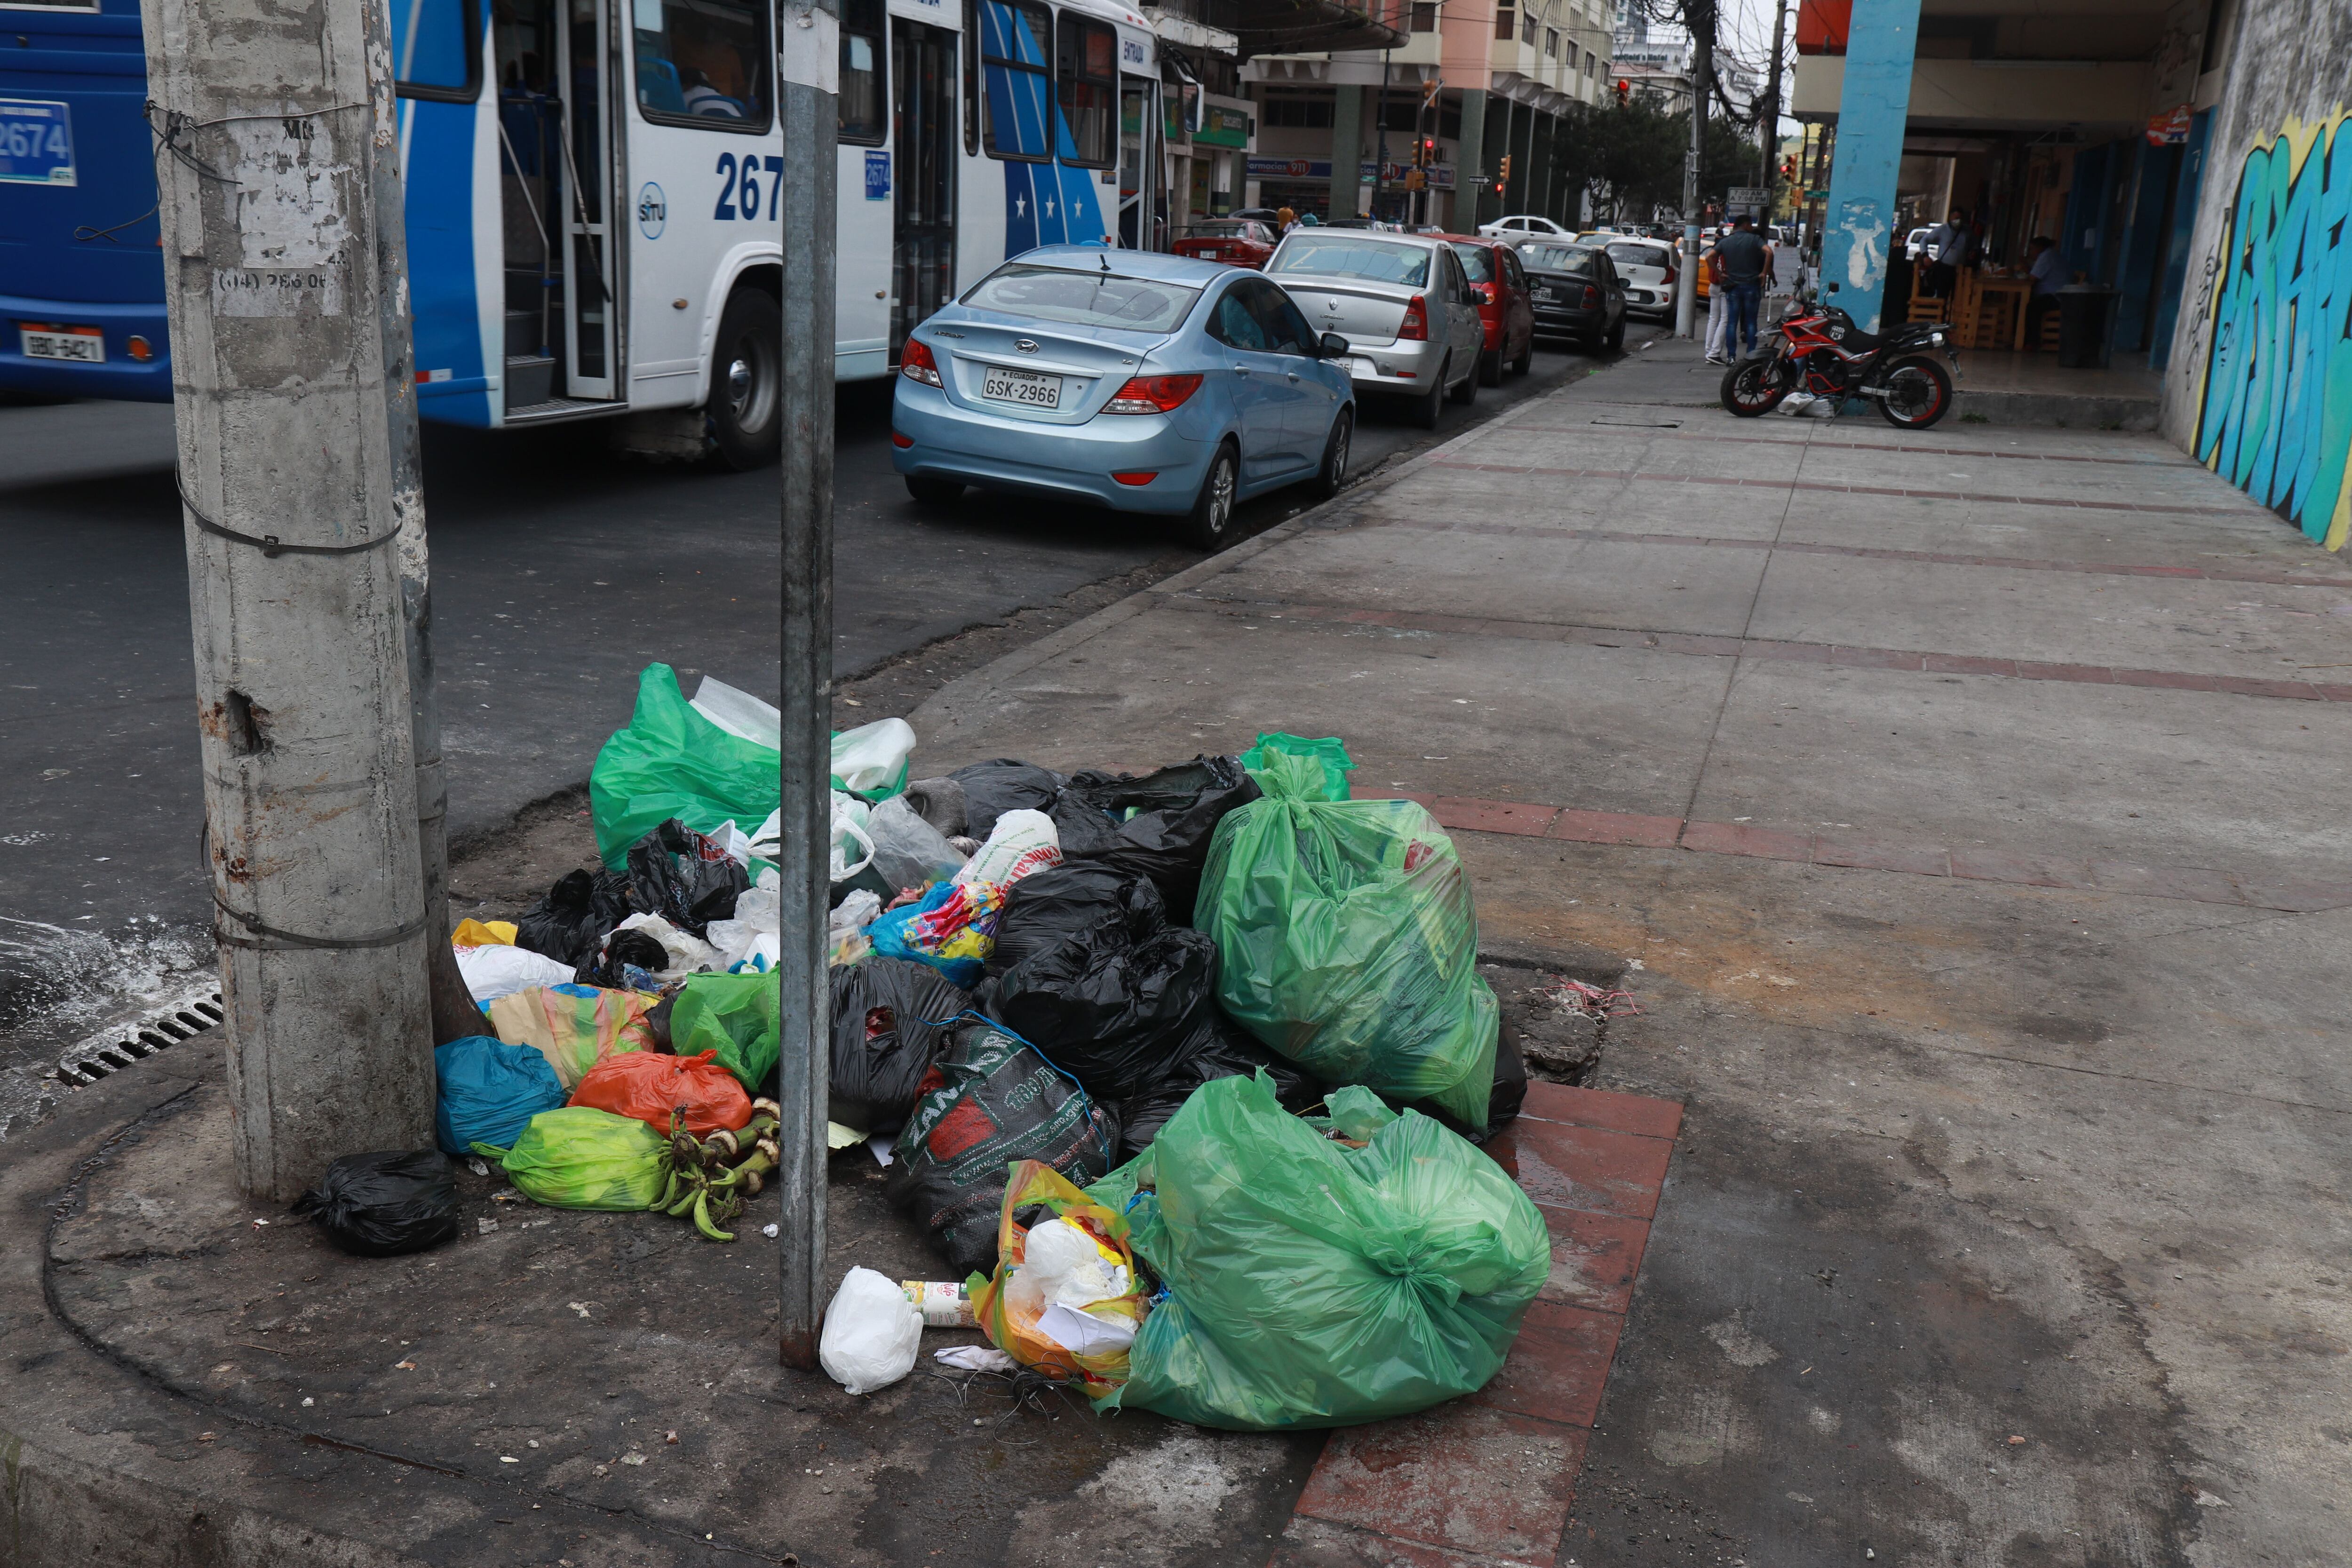 La mala disposición de la basura es uno de los problemas comunitarios que más afecta a la vecindad en Guayaquil, como ocurre en zonas céntricas. Foto: Ronald Cedeño